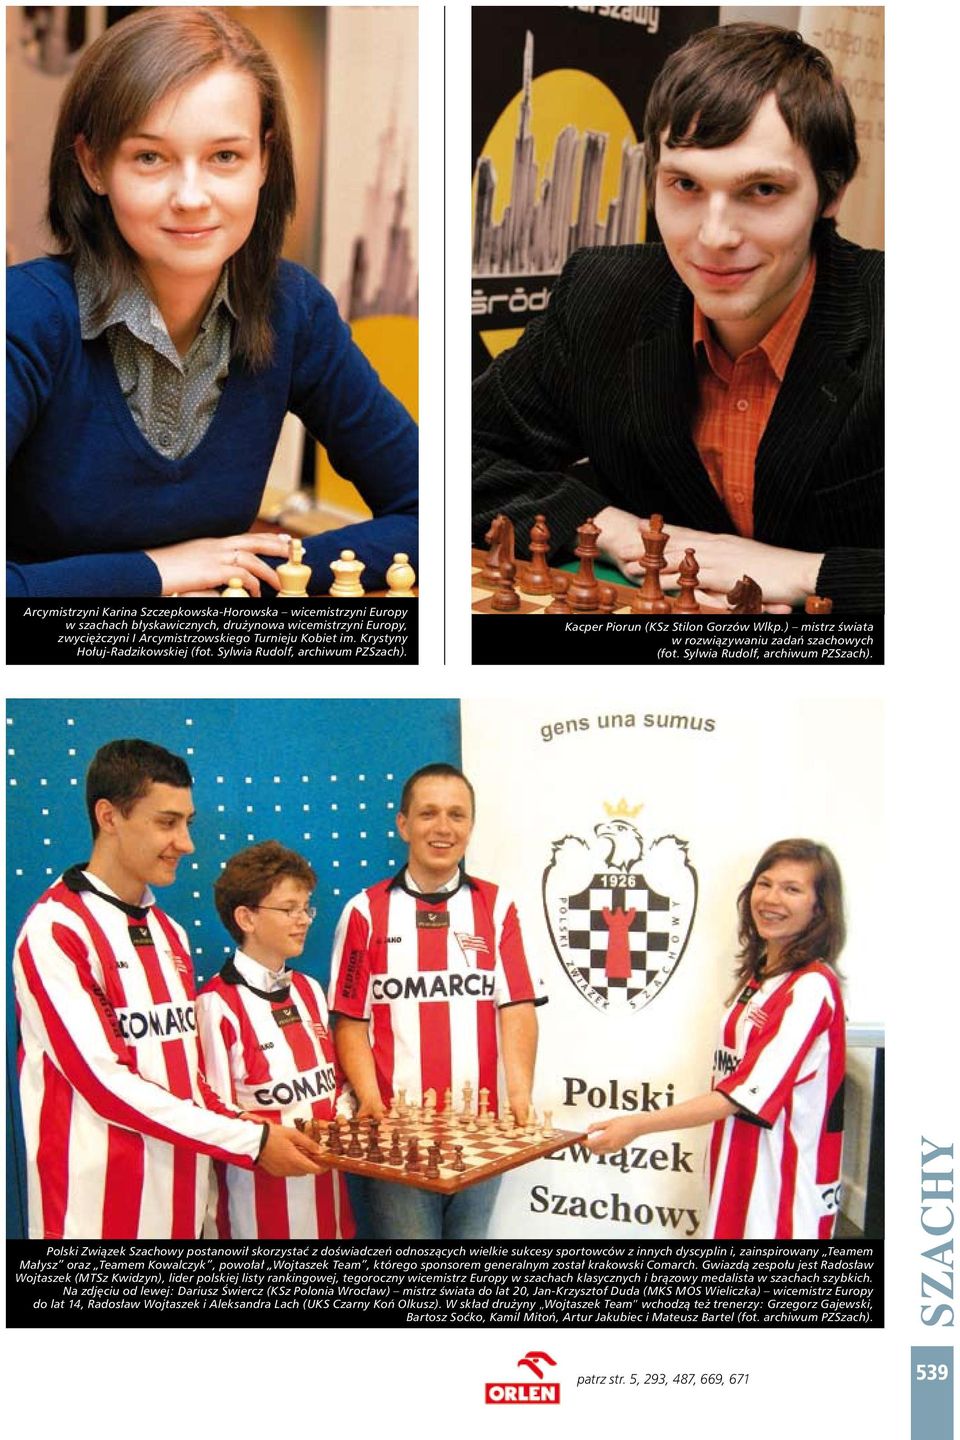 Kacper Piorun mistrz świata w rozwiązywaniu zadań szachowych (fot. Sylwia Rudolf, archiwum PZSzach).